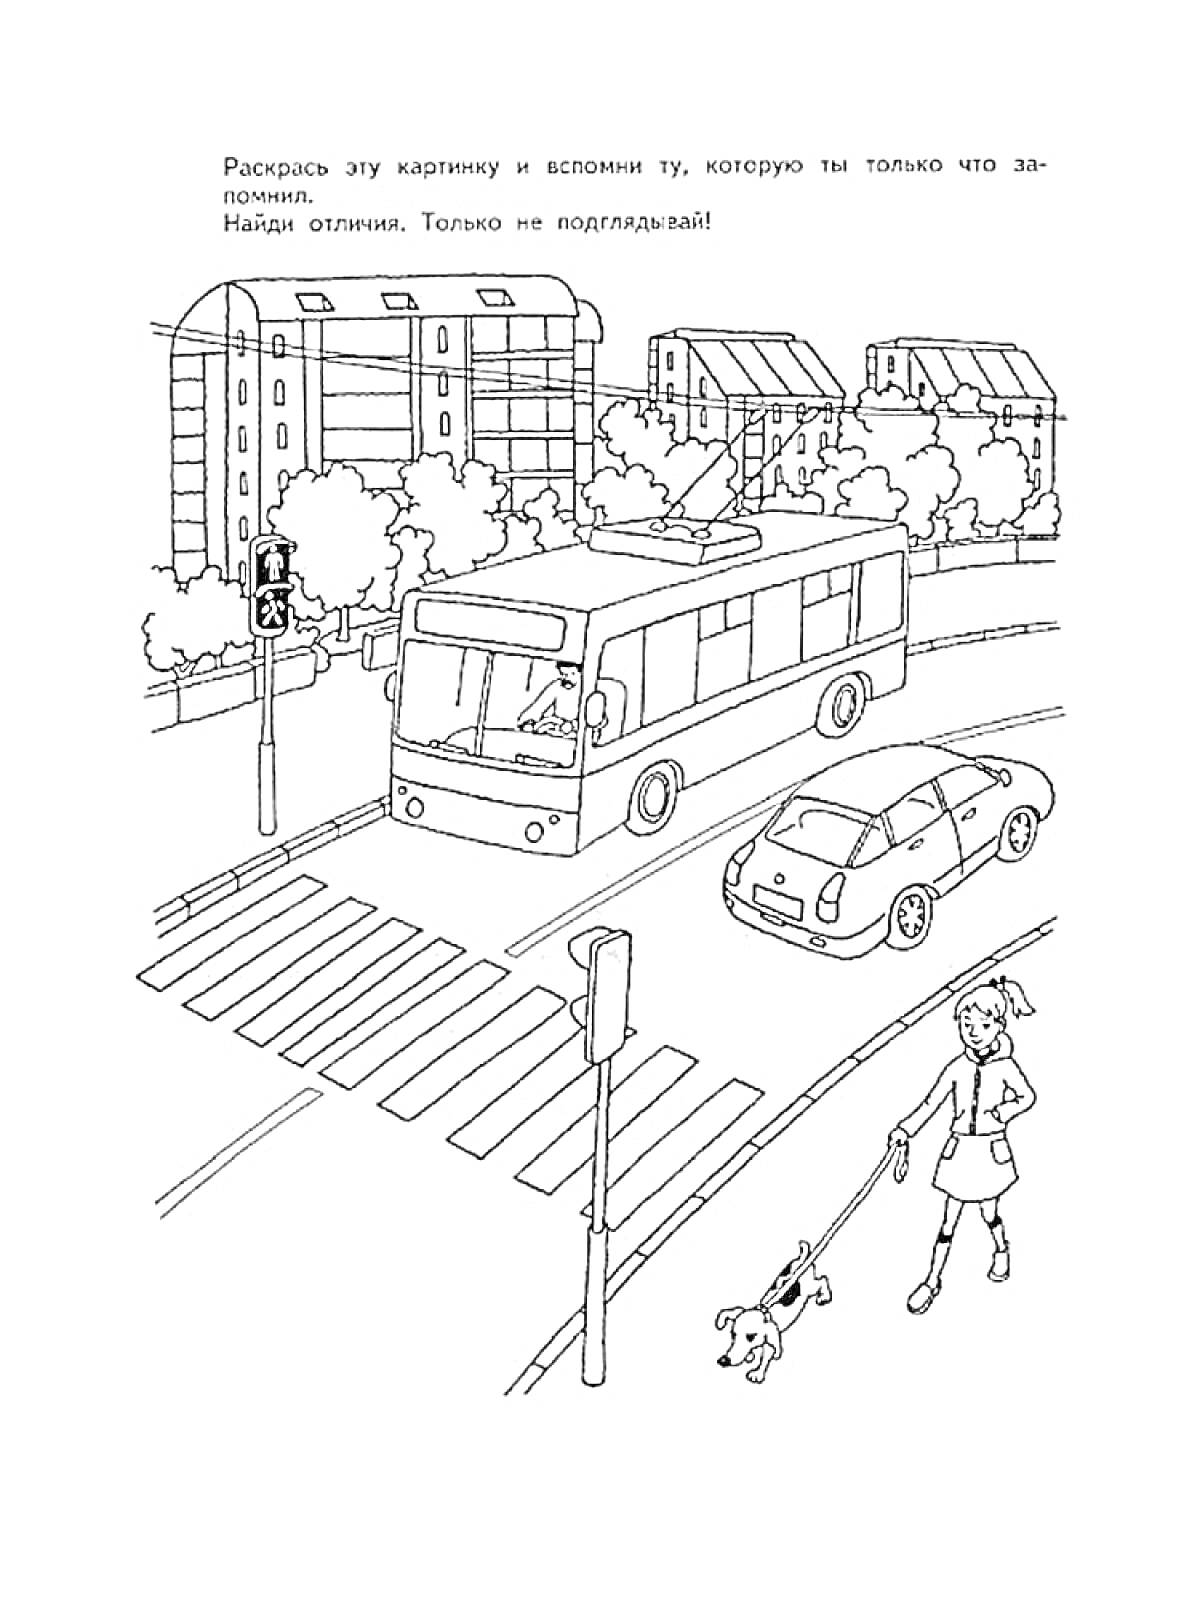 Раскраска Городская улица с автобусом, легковым автомобилем, светофором, пешеходным переходом, женщиной с собакой, деревьями и многоквартирными домами